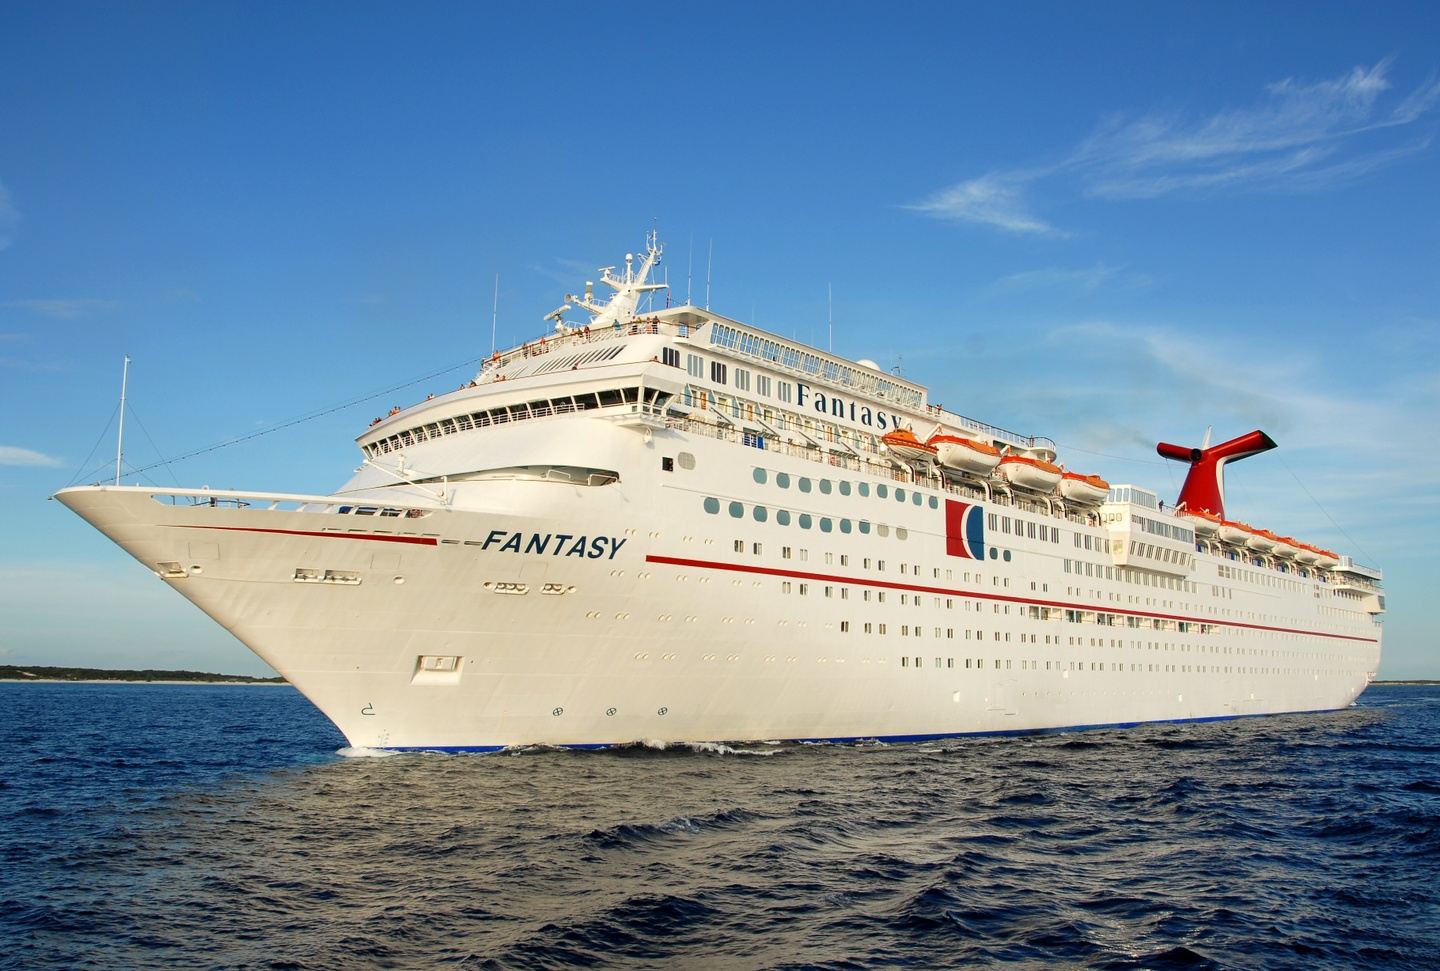 "Turkeybreak Cruise"